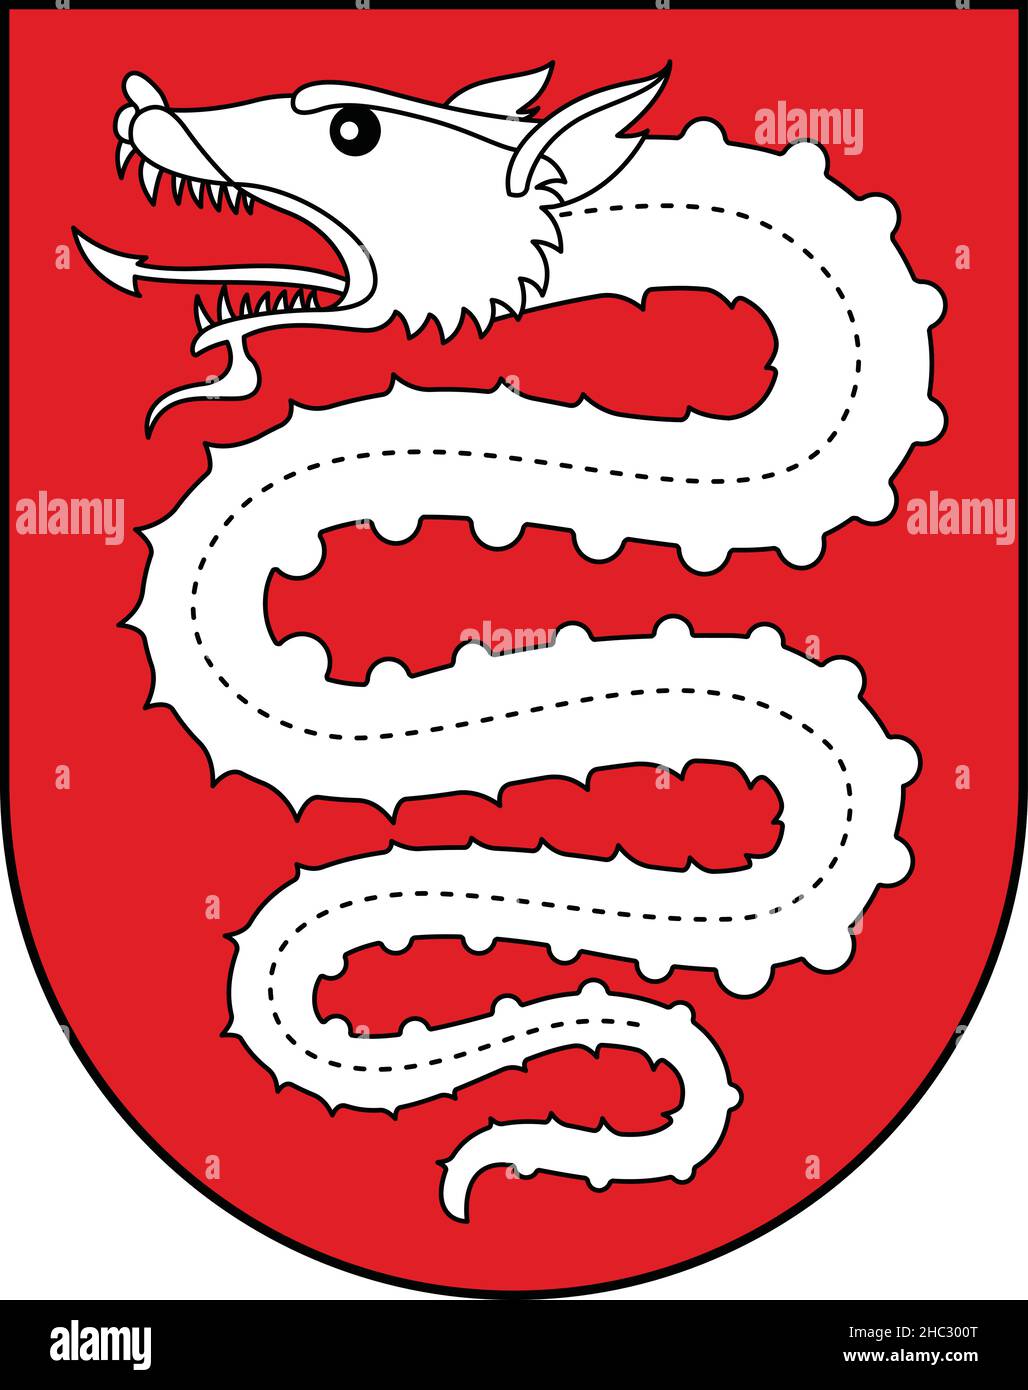 Stemma ufficiale illustrazione vettoriale della capitale regionale svizzera di Bellinzona, Svizzera Illustrazione Vettoriale